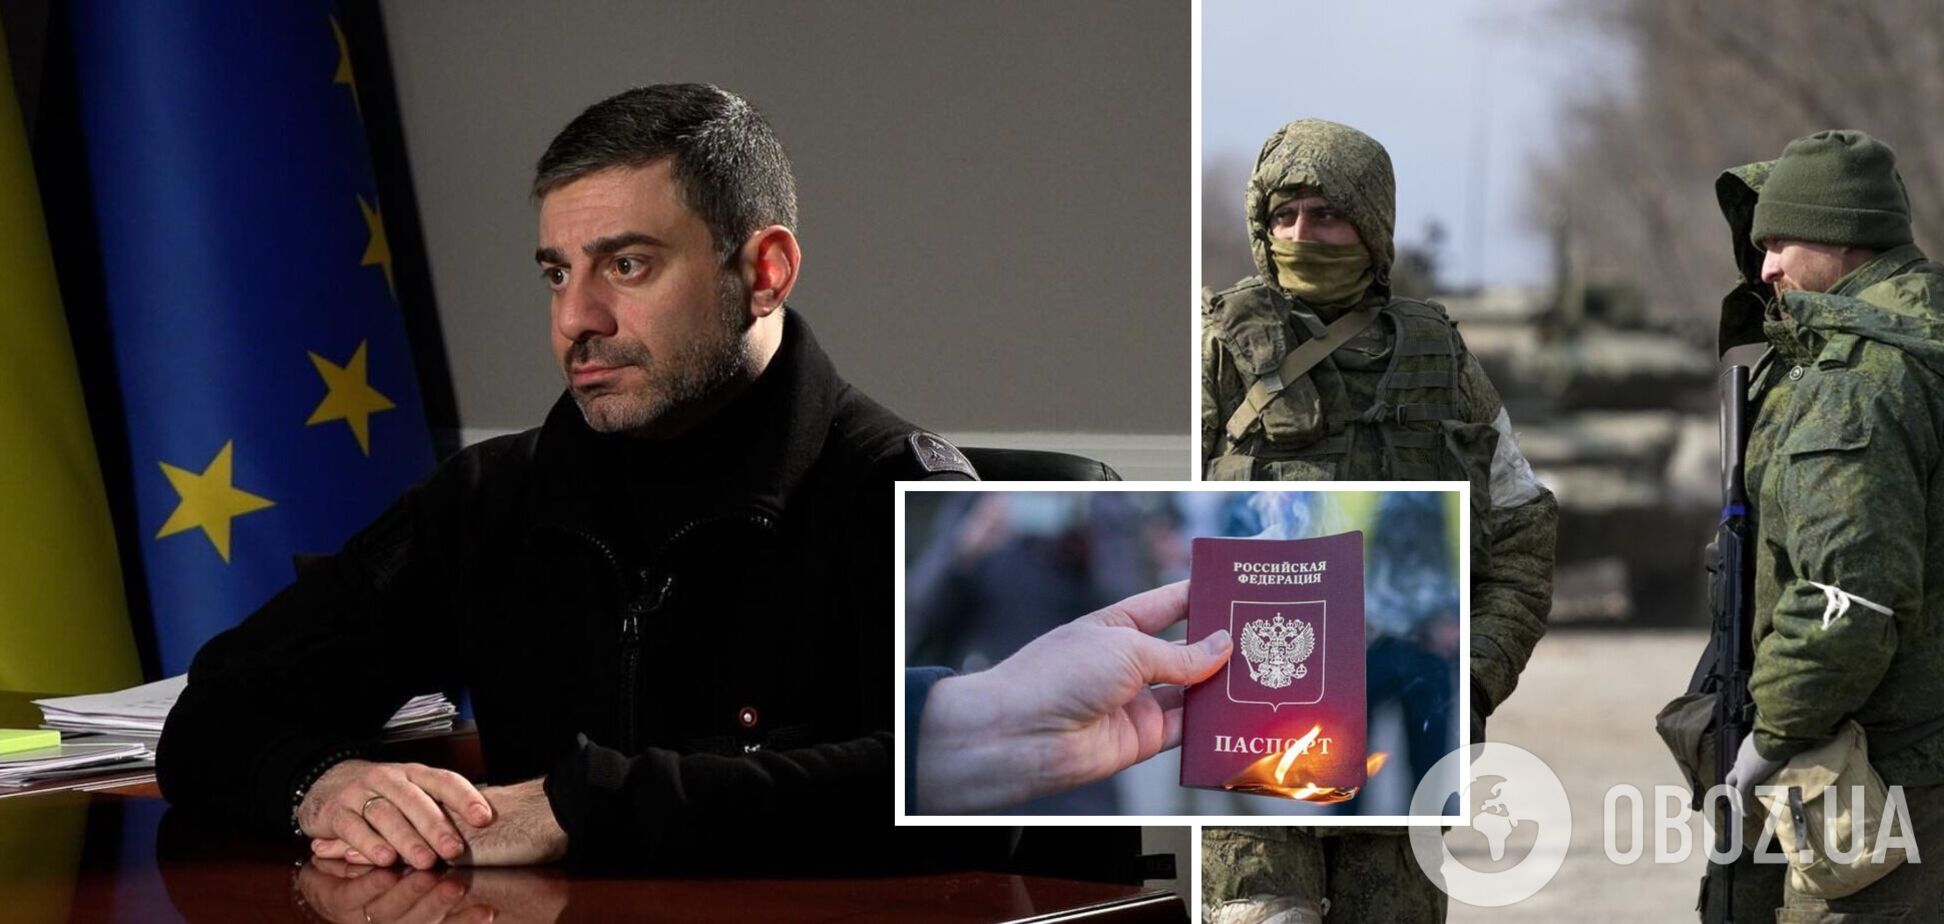 'Берите российские паспорта, чтобы выжить': омбудсмен дал совет украинцам на оккупированных территориях